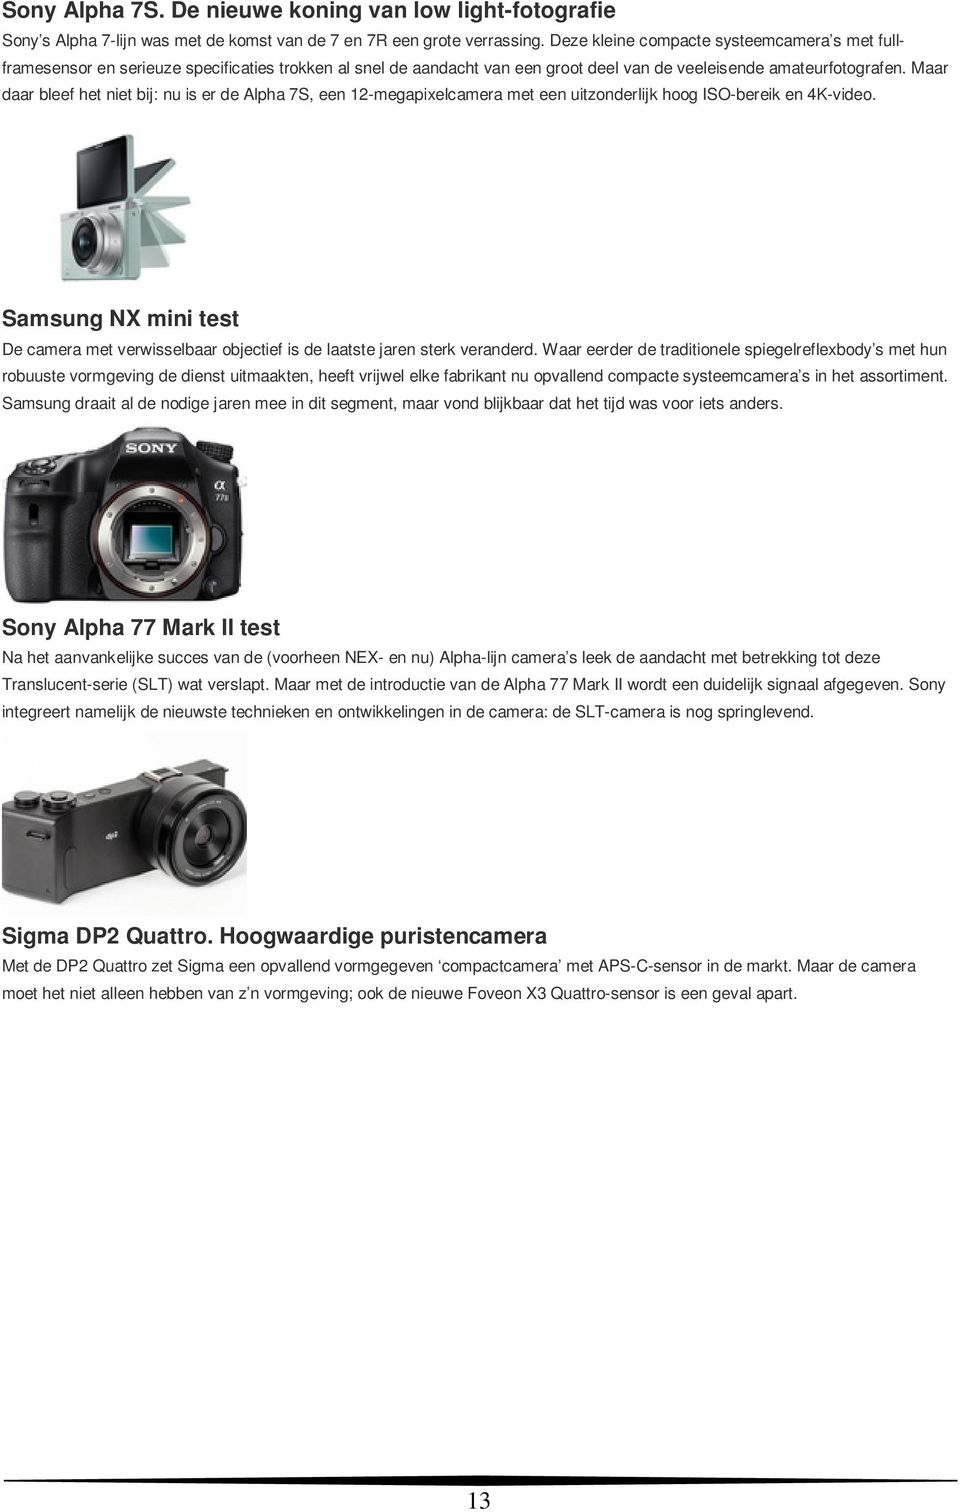 Maar daar bleef het niet bij: nu is er de Alpha 7S, een 12-megapixelcamera met een uitzonderlijk hoog ISO-bereik en 4K-video.